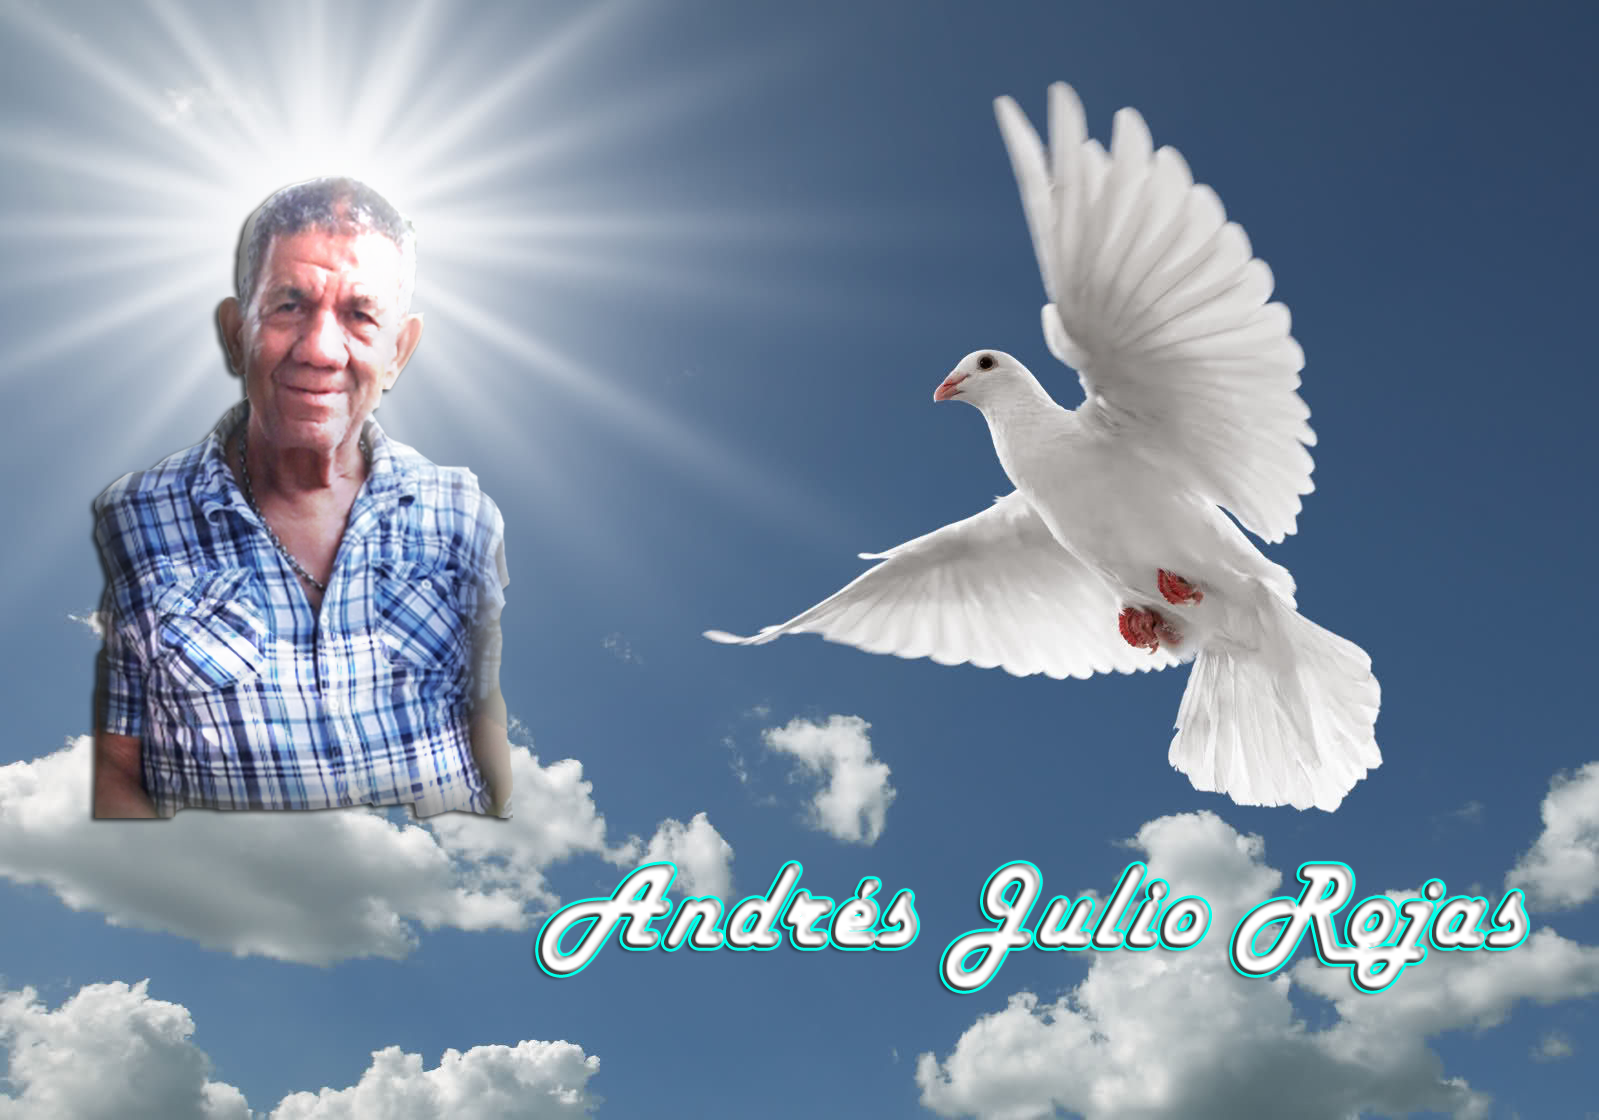 Nuestras mas sinceras condolencias por el fallecimiento de un excelente conductor, Andrés Julio Rojas